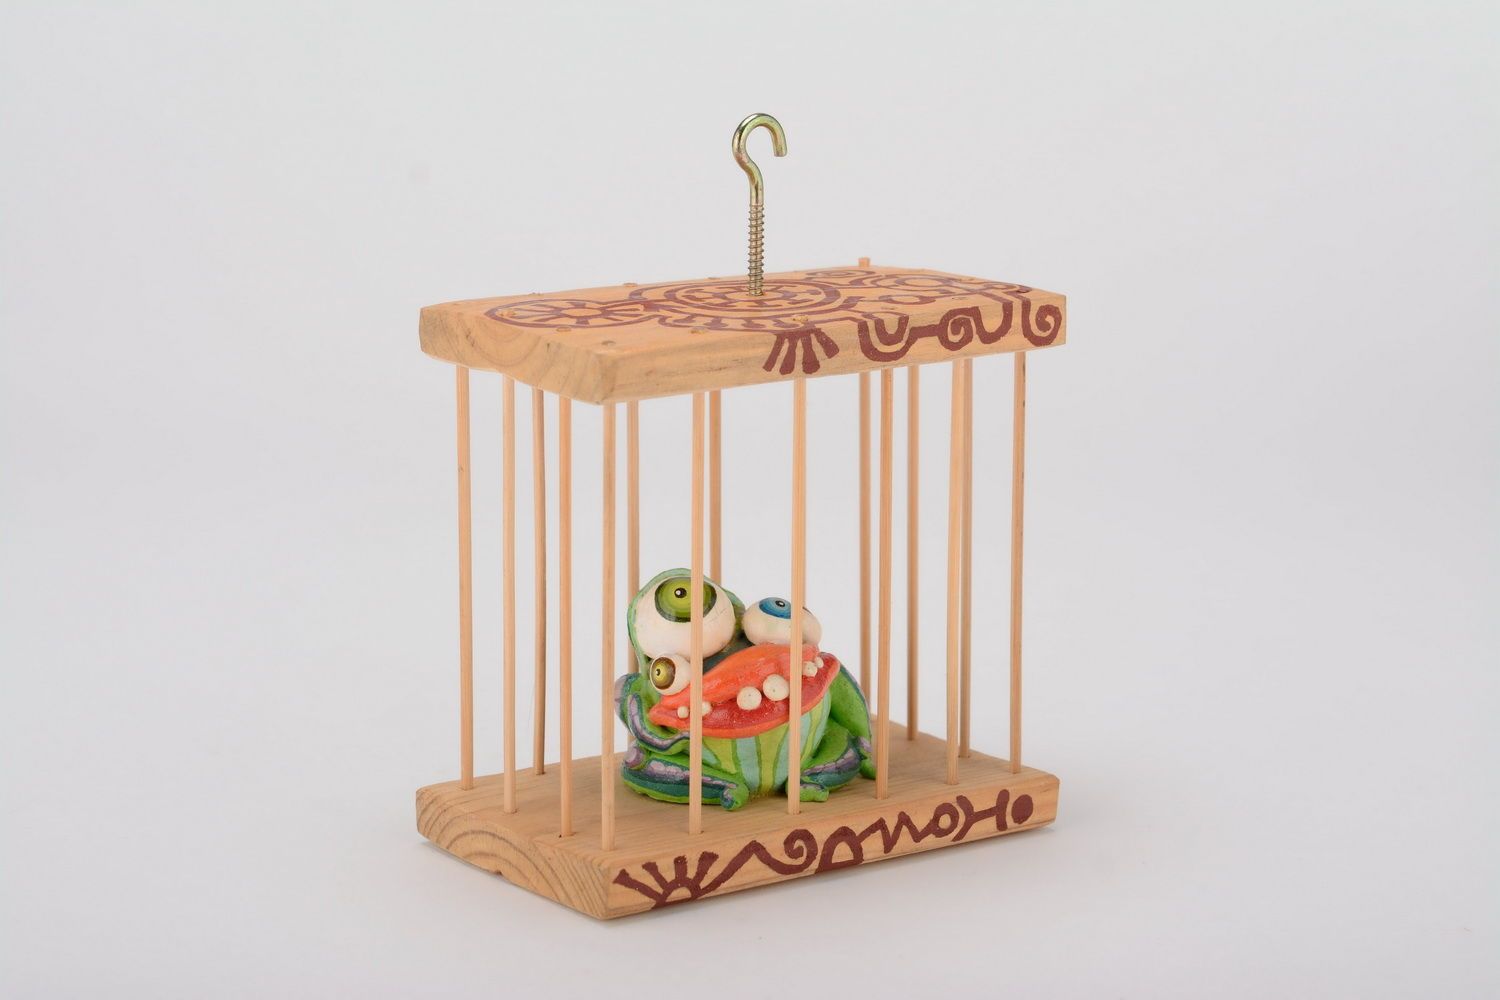 Grigri céramique verdoyant emprisonné dans une cage photo 3